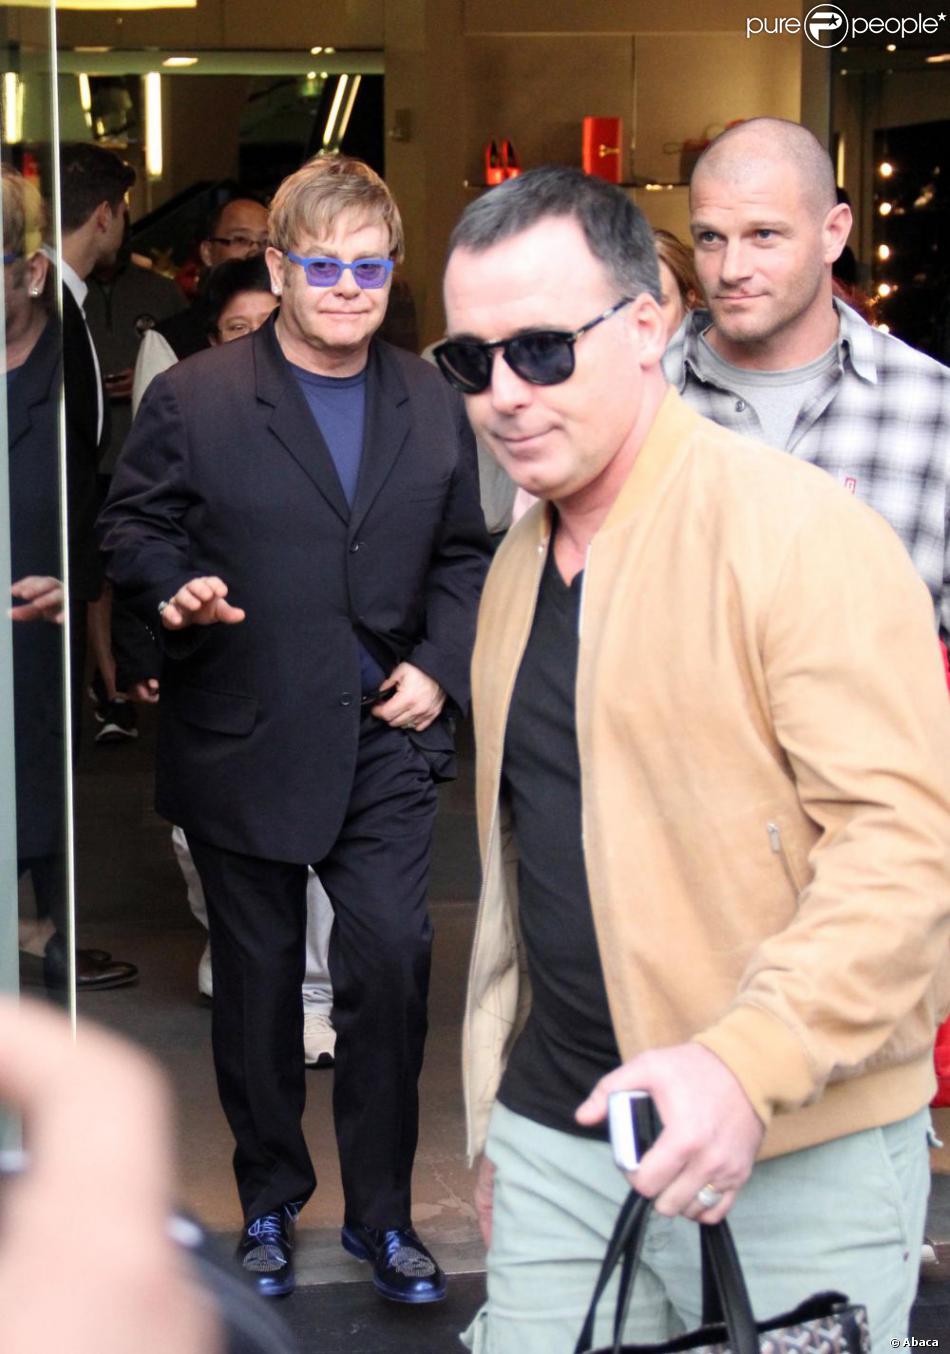 Elton John et David Furnish à Los Angeles, le 5 janvier 2013.